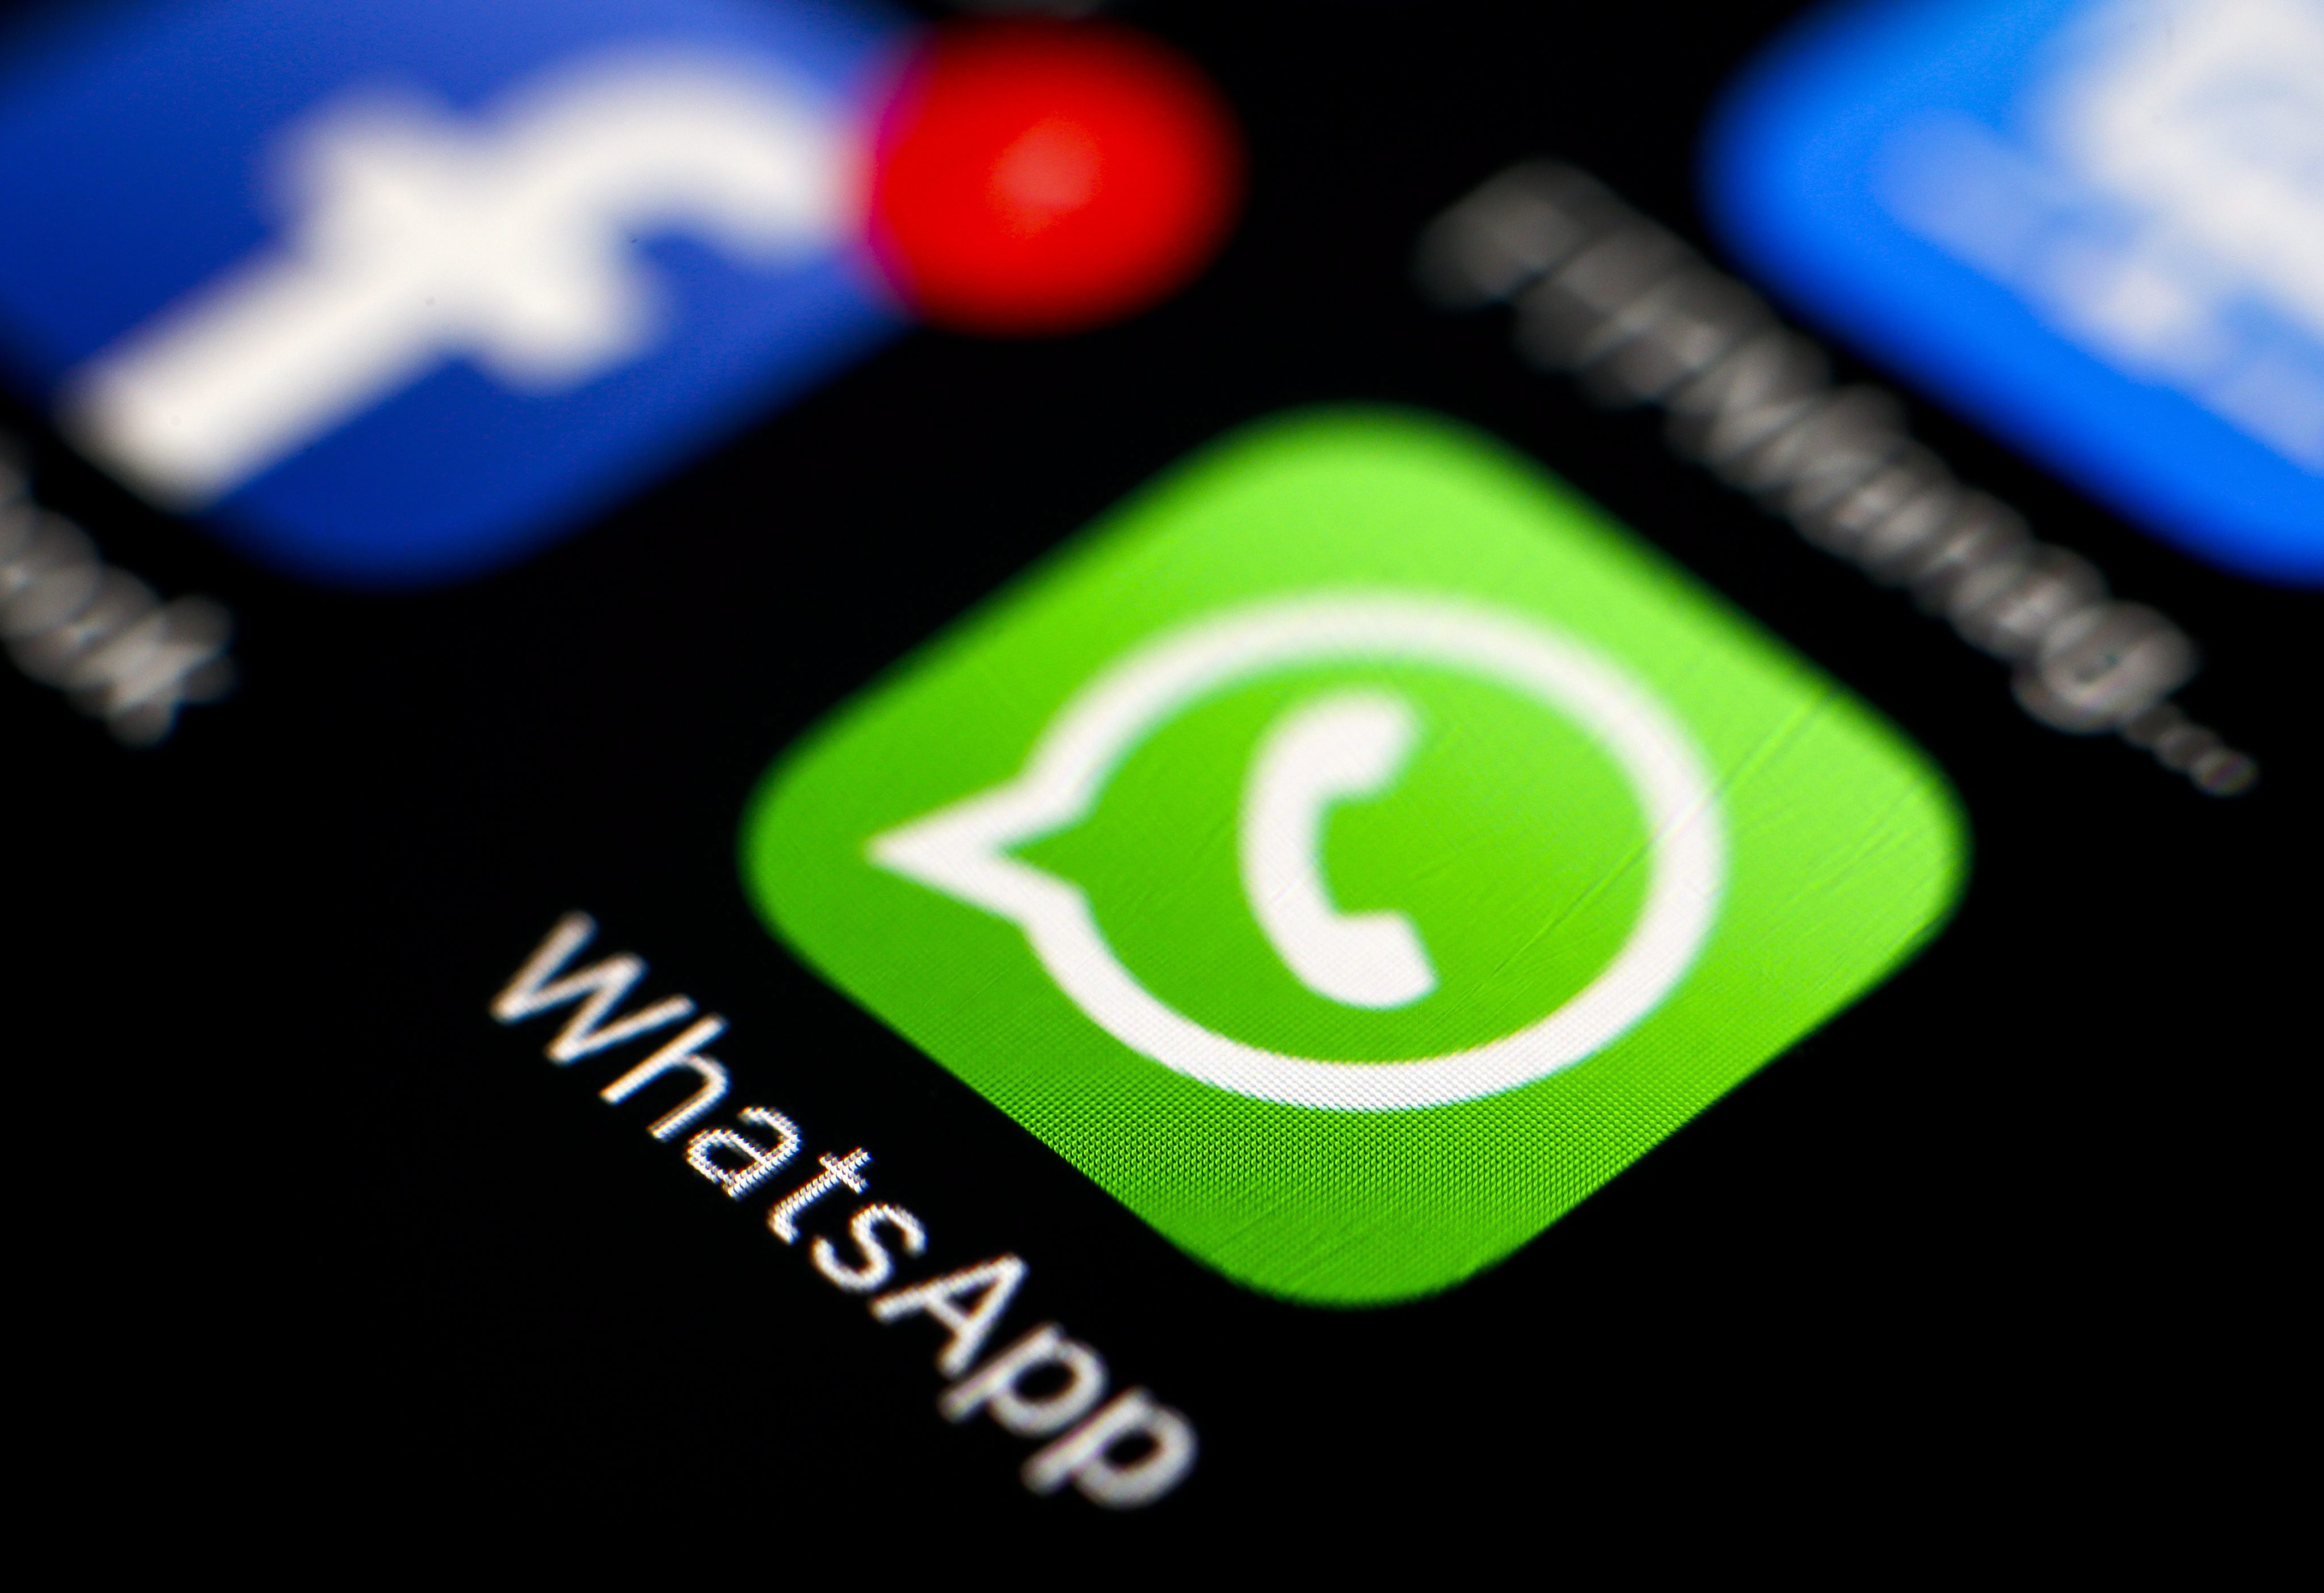 15 يوليو 2021 الرقمية 0 comments يطرح WhatsApp إصدار تجريبي جديد ويمكن استخدامه الآن على أجهزة متعددة 82